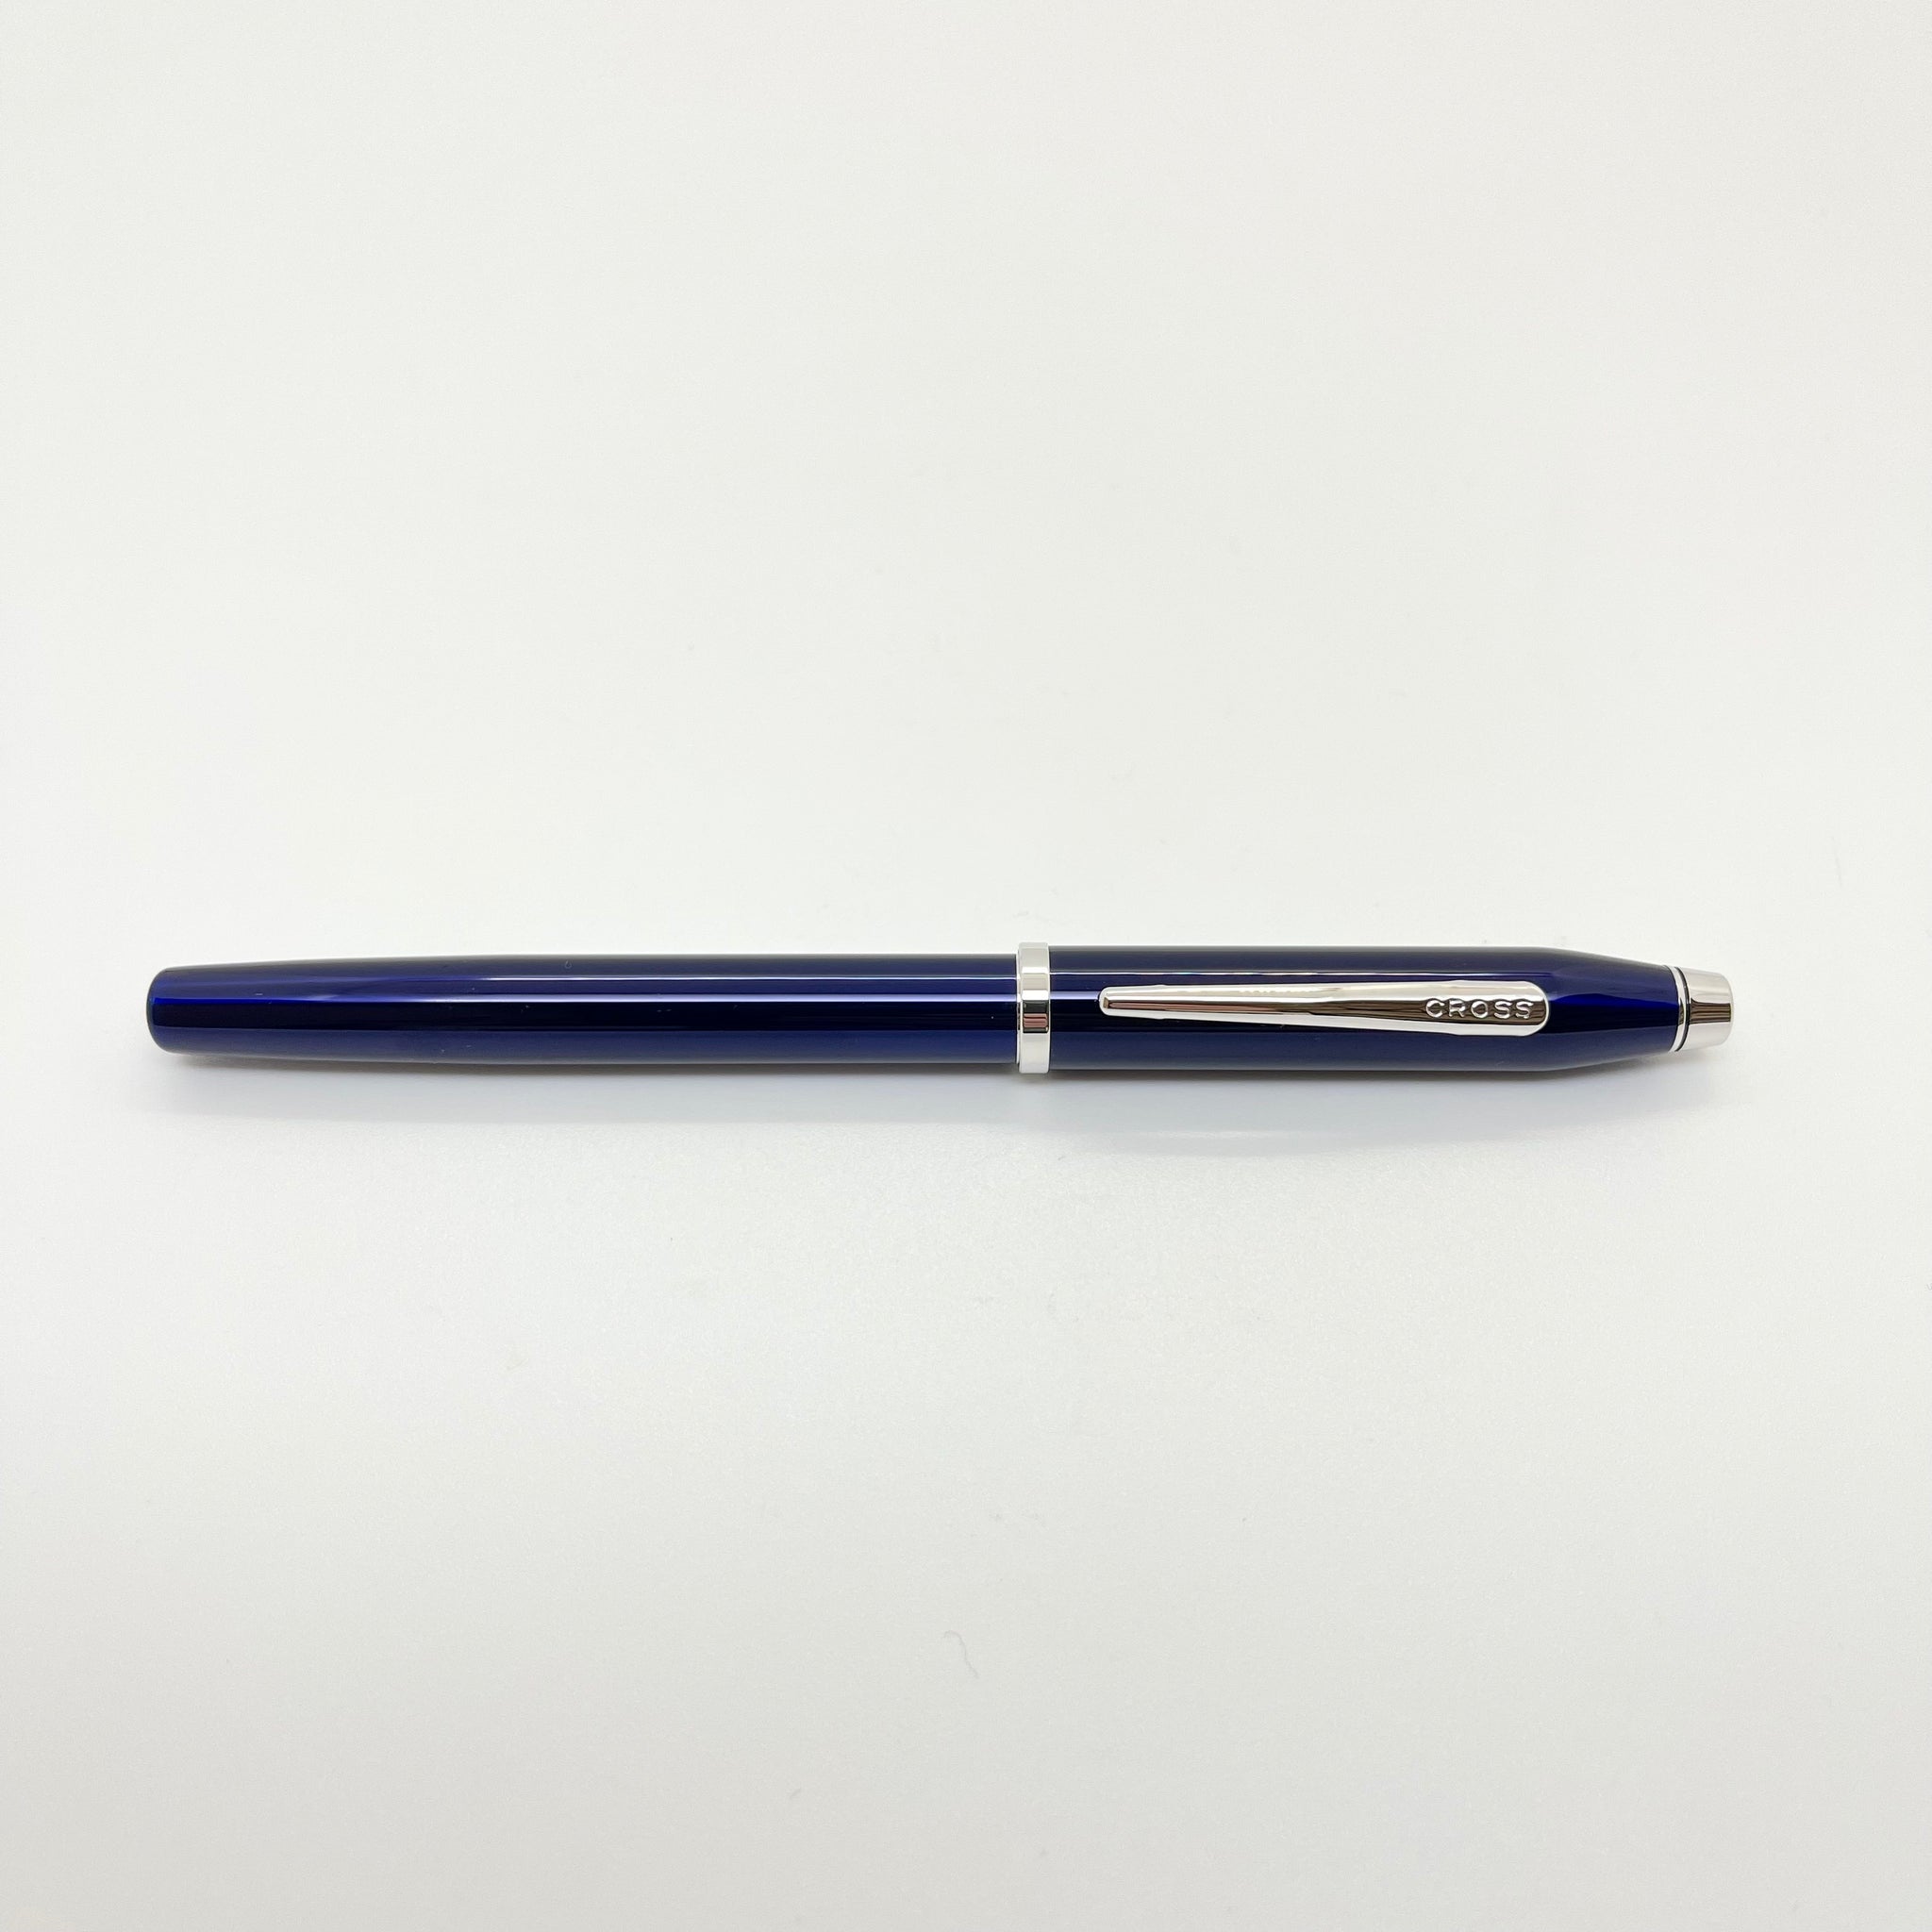 Cross, penna a sfera Century II Penna roller Translucent Blue